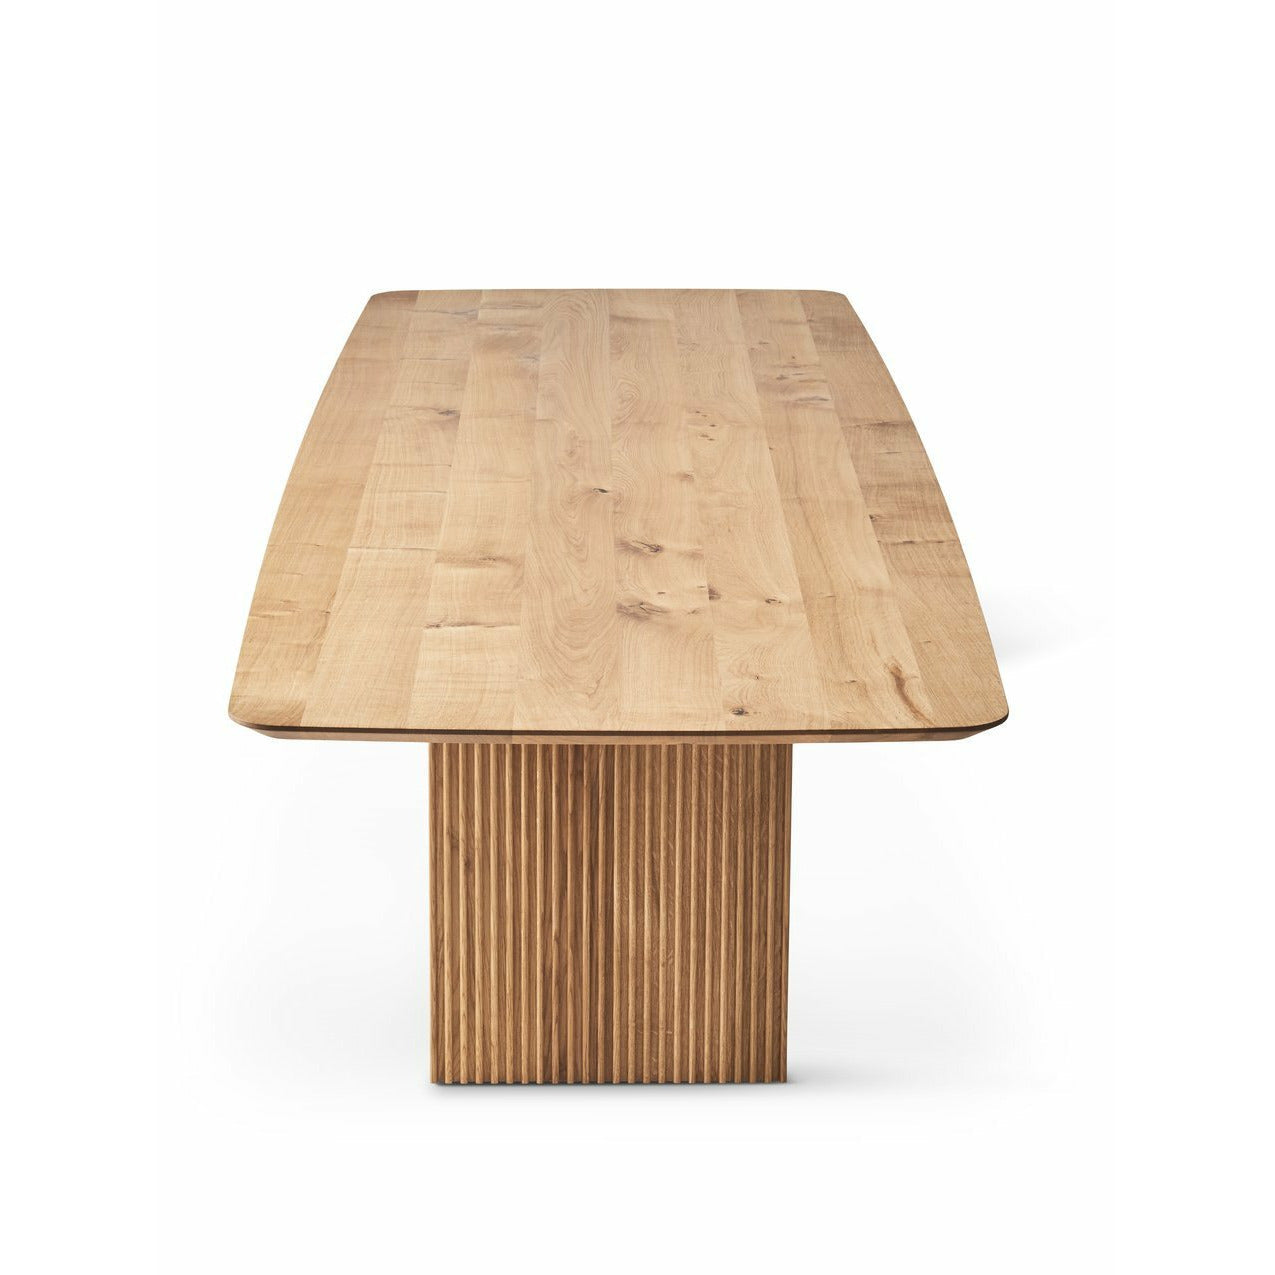 Dk3 Ti spisebord vildt egetræolie, 300x105 cm